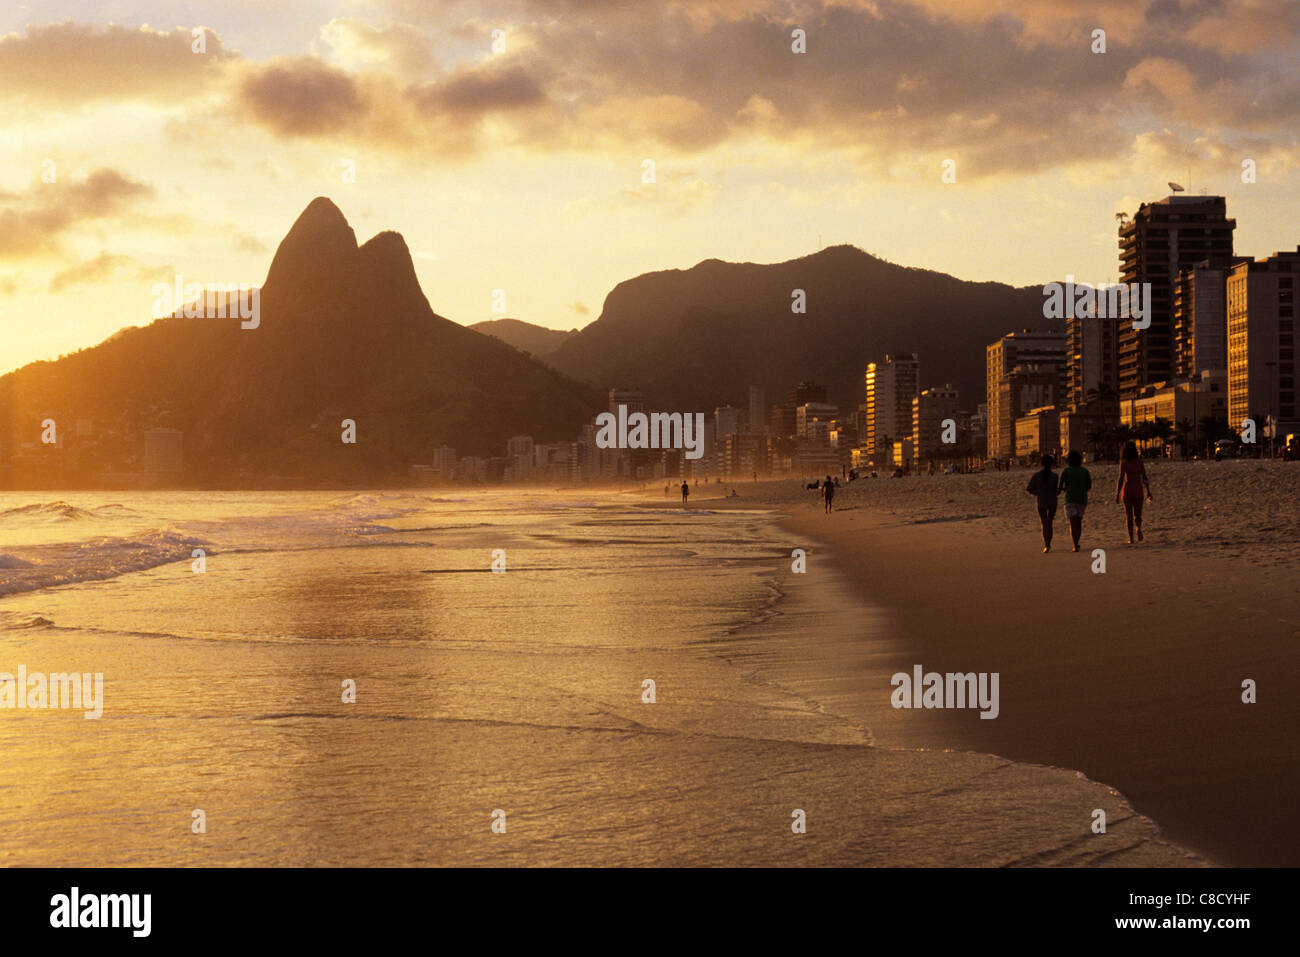 Rio de Janeiro, Brasile. Dois Irmaos (due fratelli) montagna nella luce della sera e Leblon Ipanema beach; il mare e la sabbia. Foto Stock